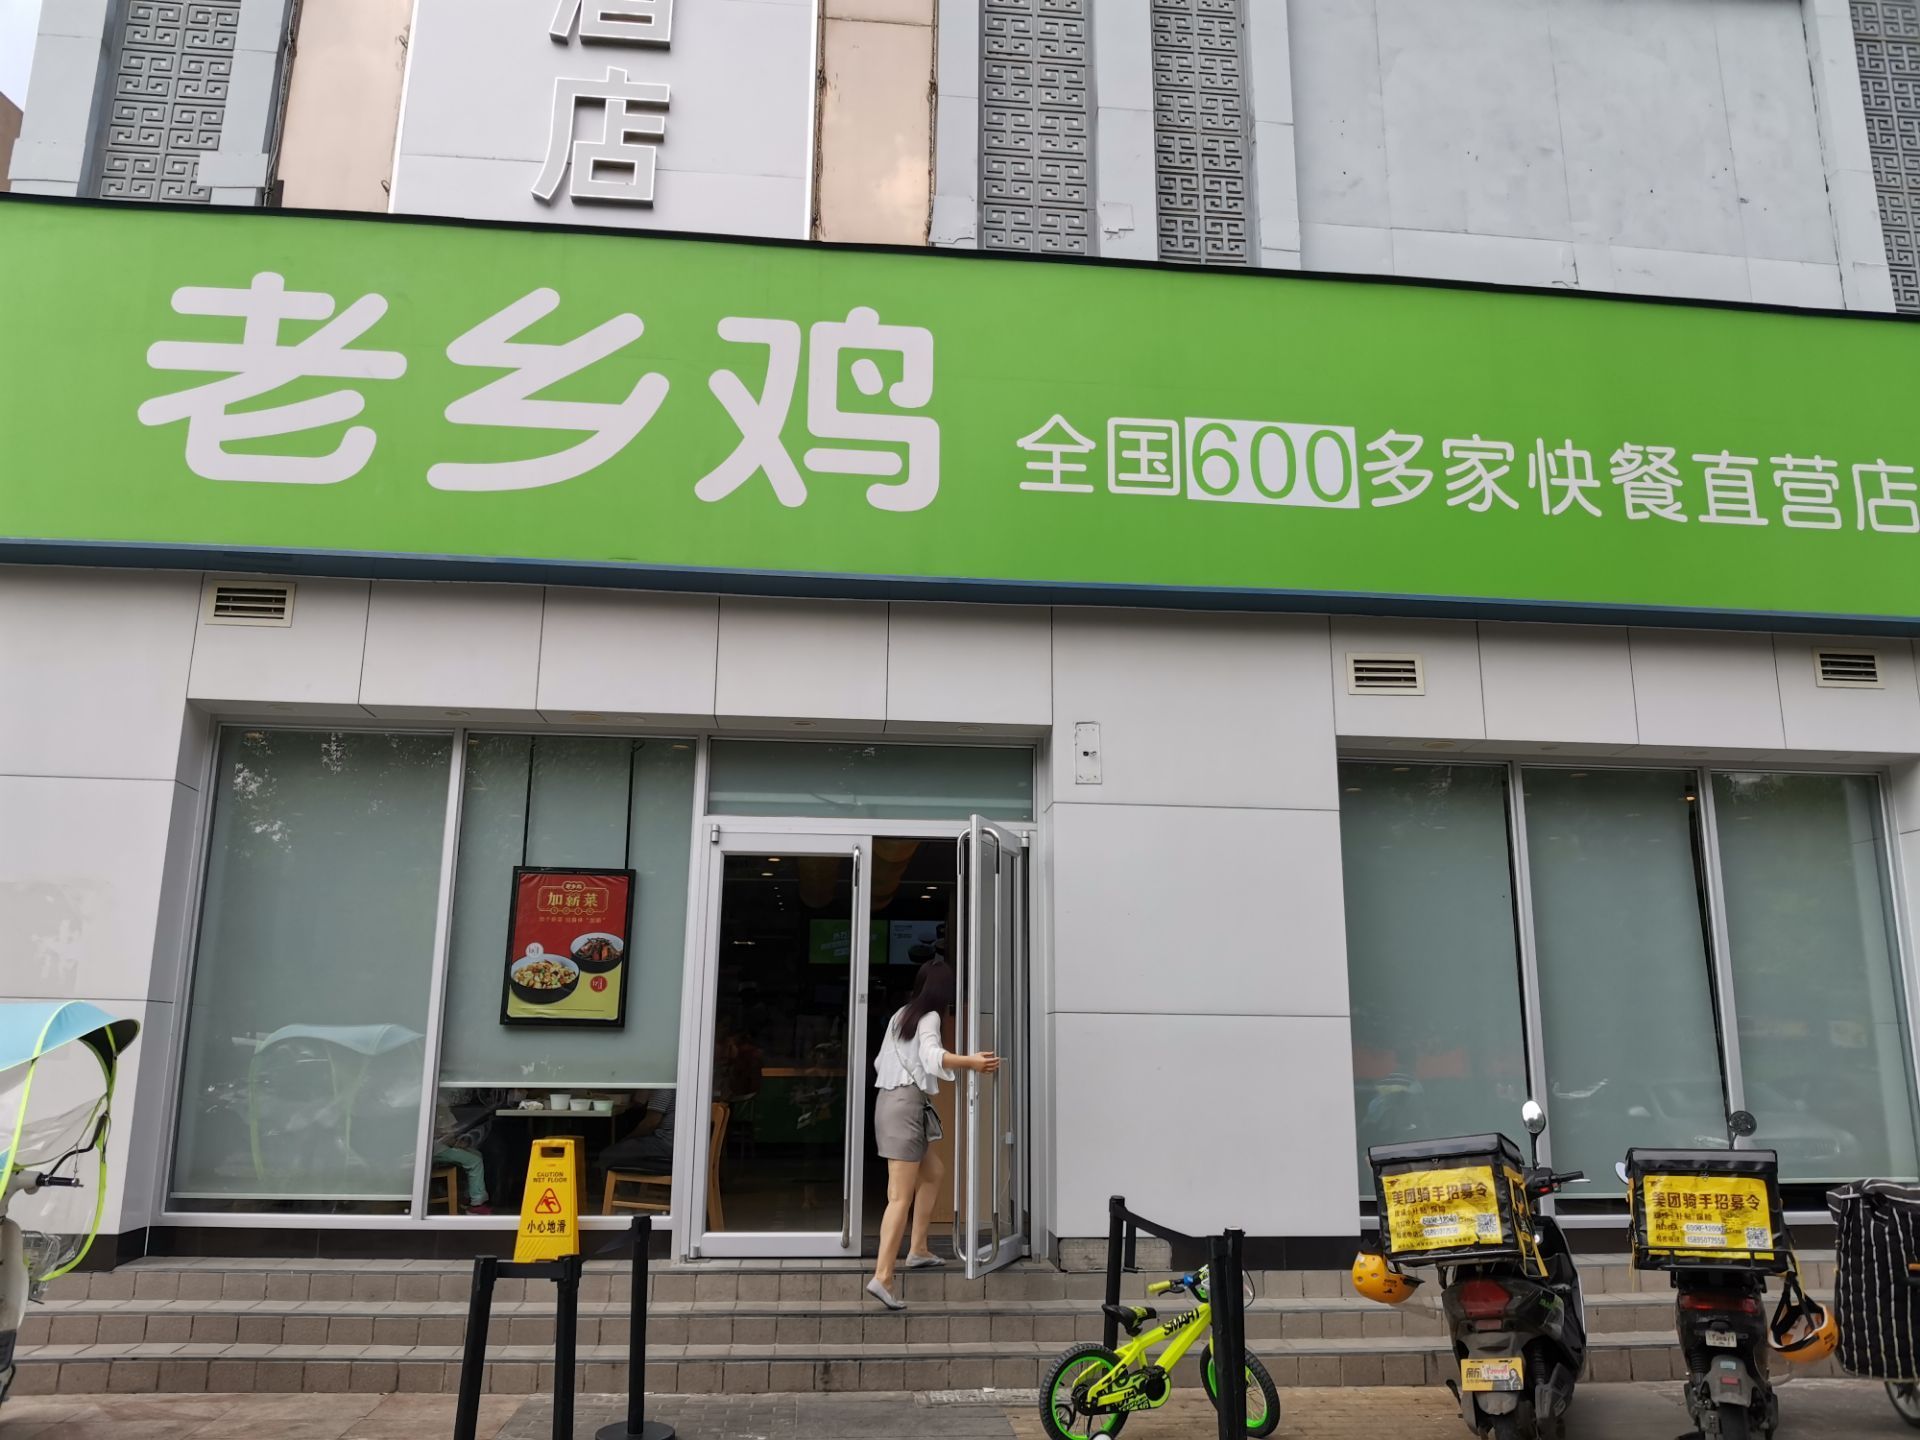 2022老乡鸡(南京郁金香路店)美食餐厅【服务 今天是免费午餐日.